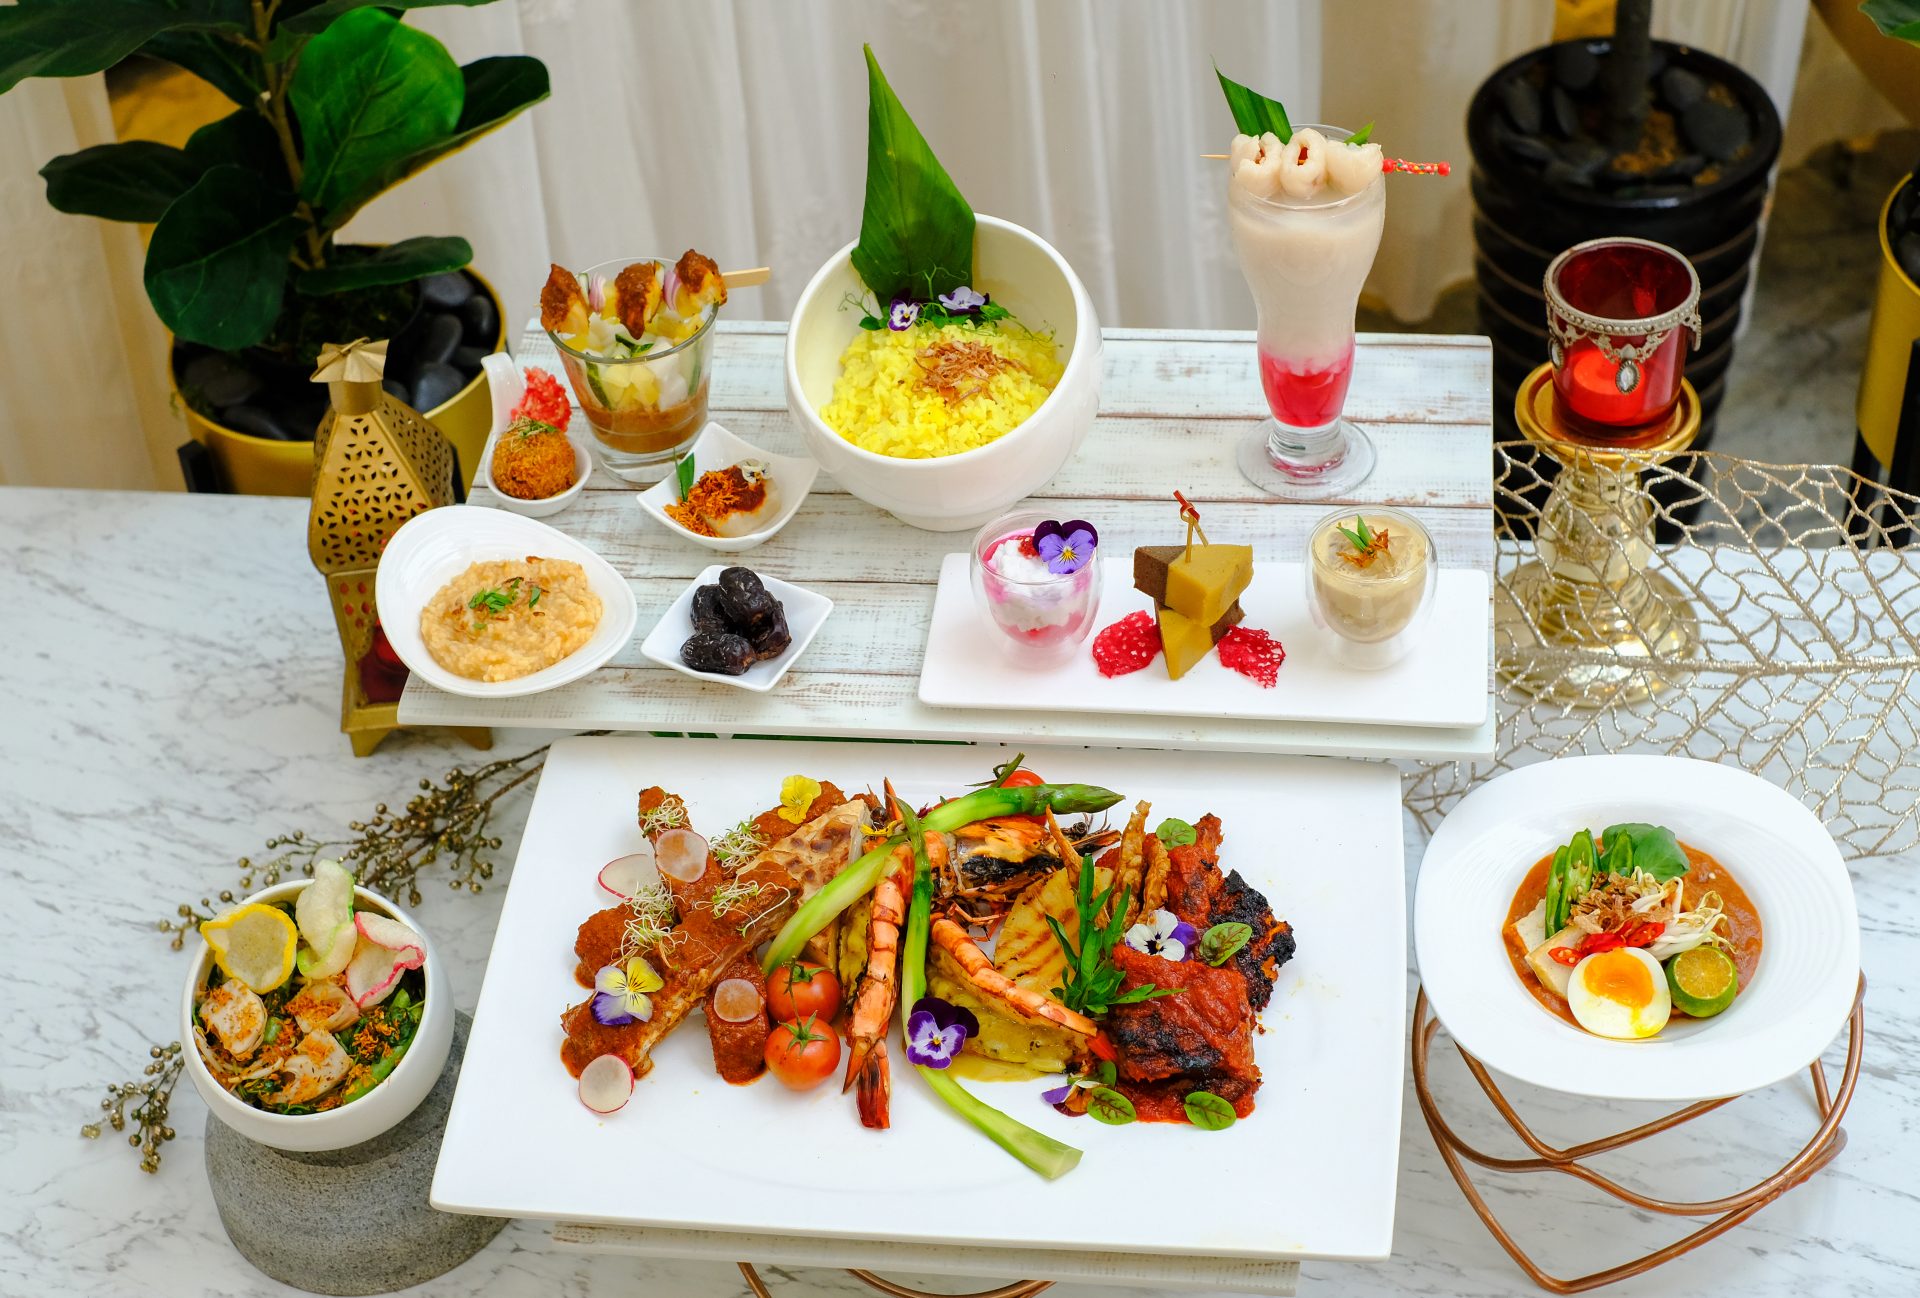 Permata's iftar menu dishes